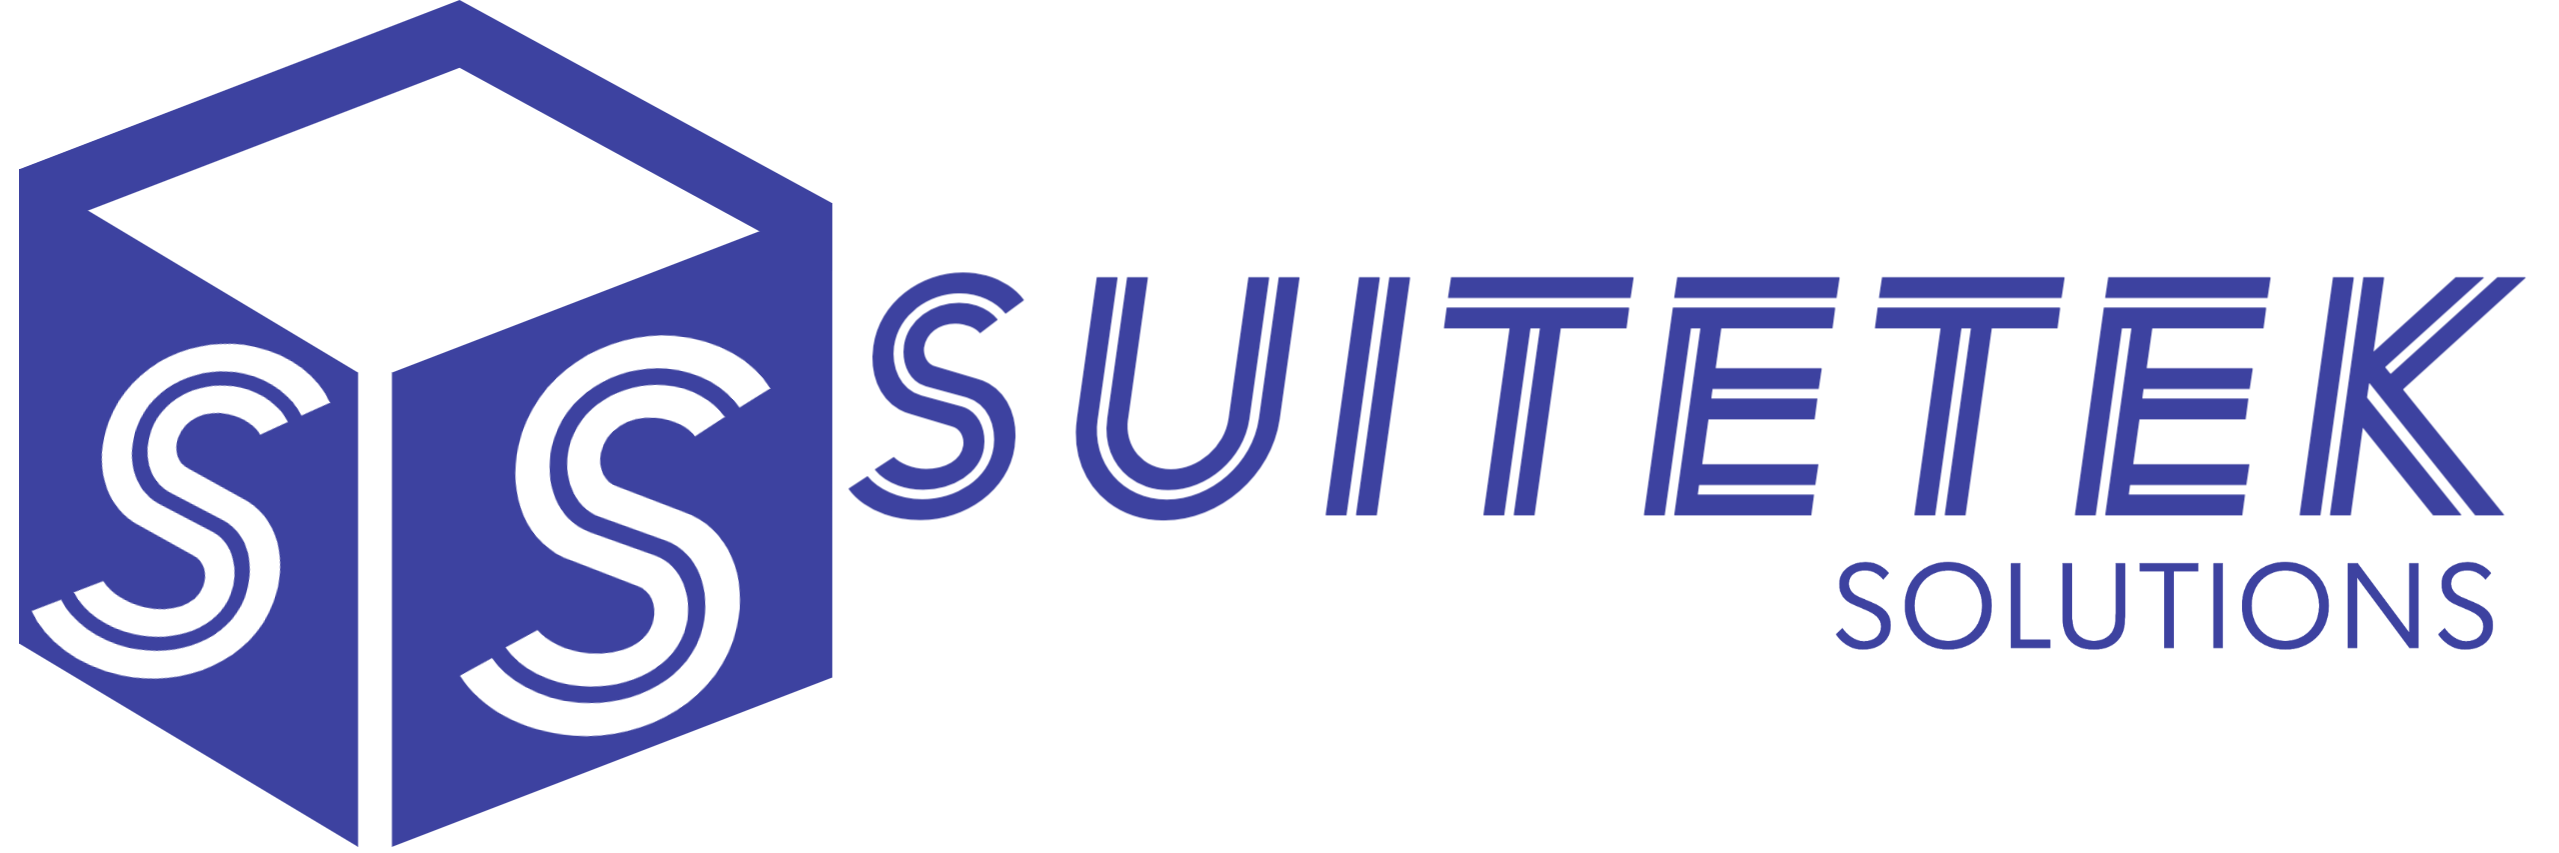 SuiteTek Solutions